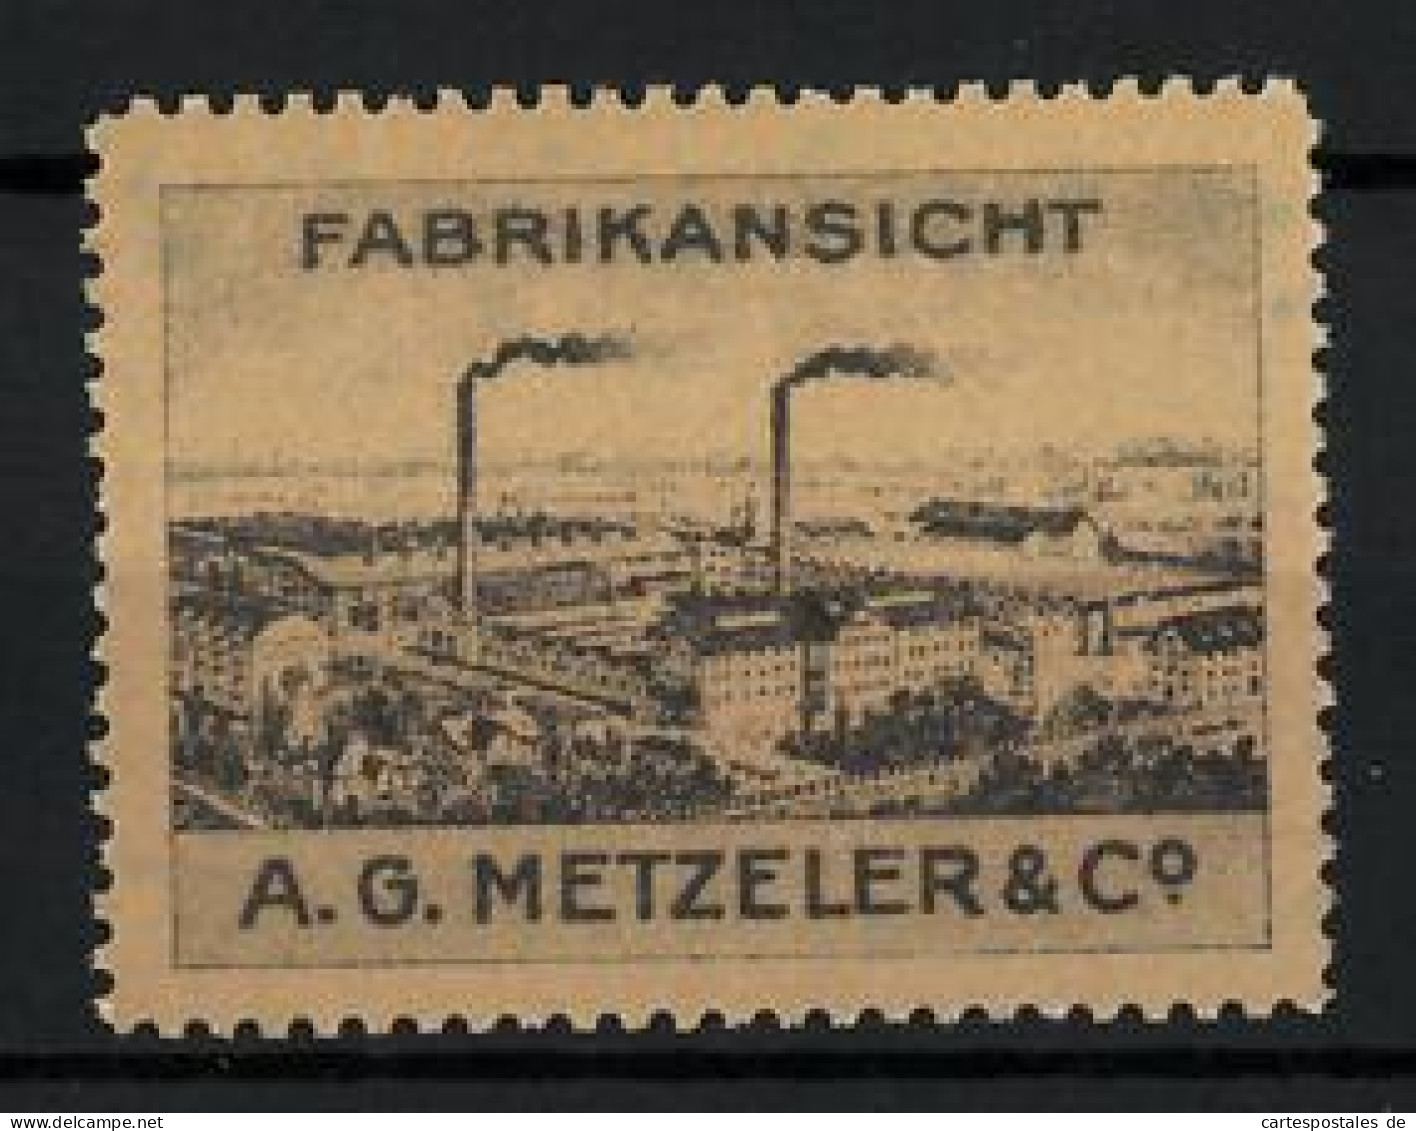 Reklamemarke A. G. Metzeler & Co., Fabrikansicht  - Vignetten (Erinnophilie)